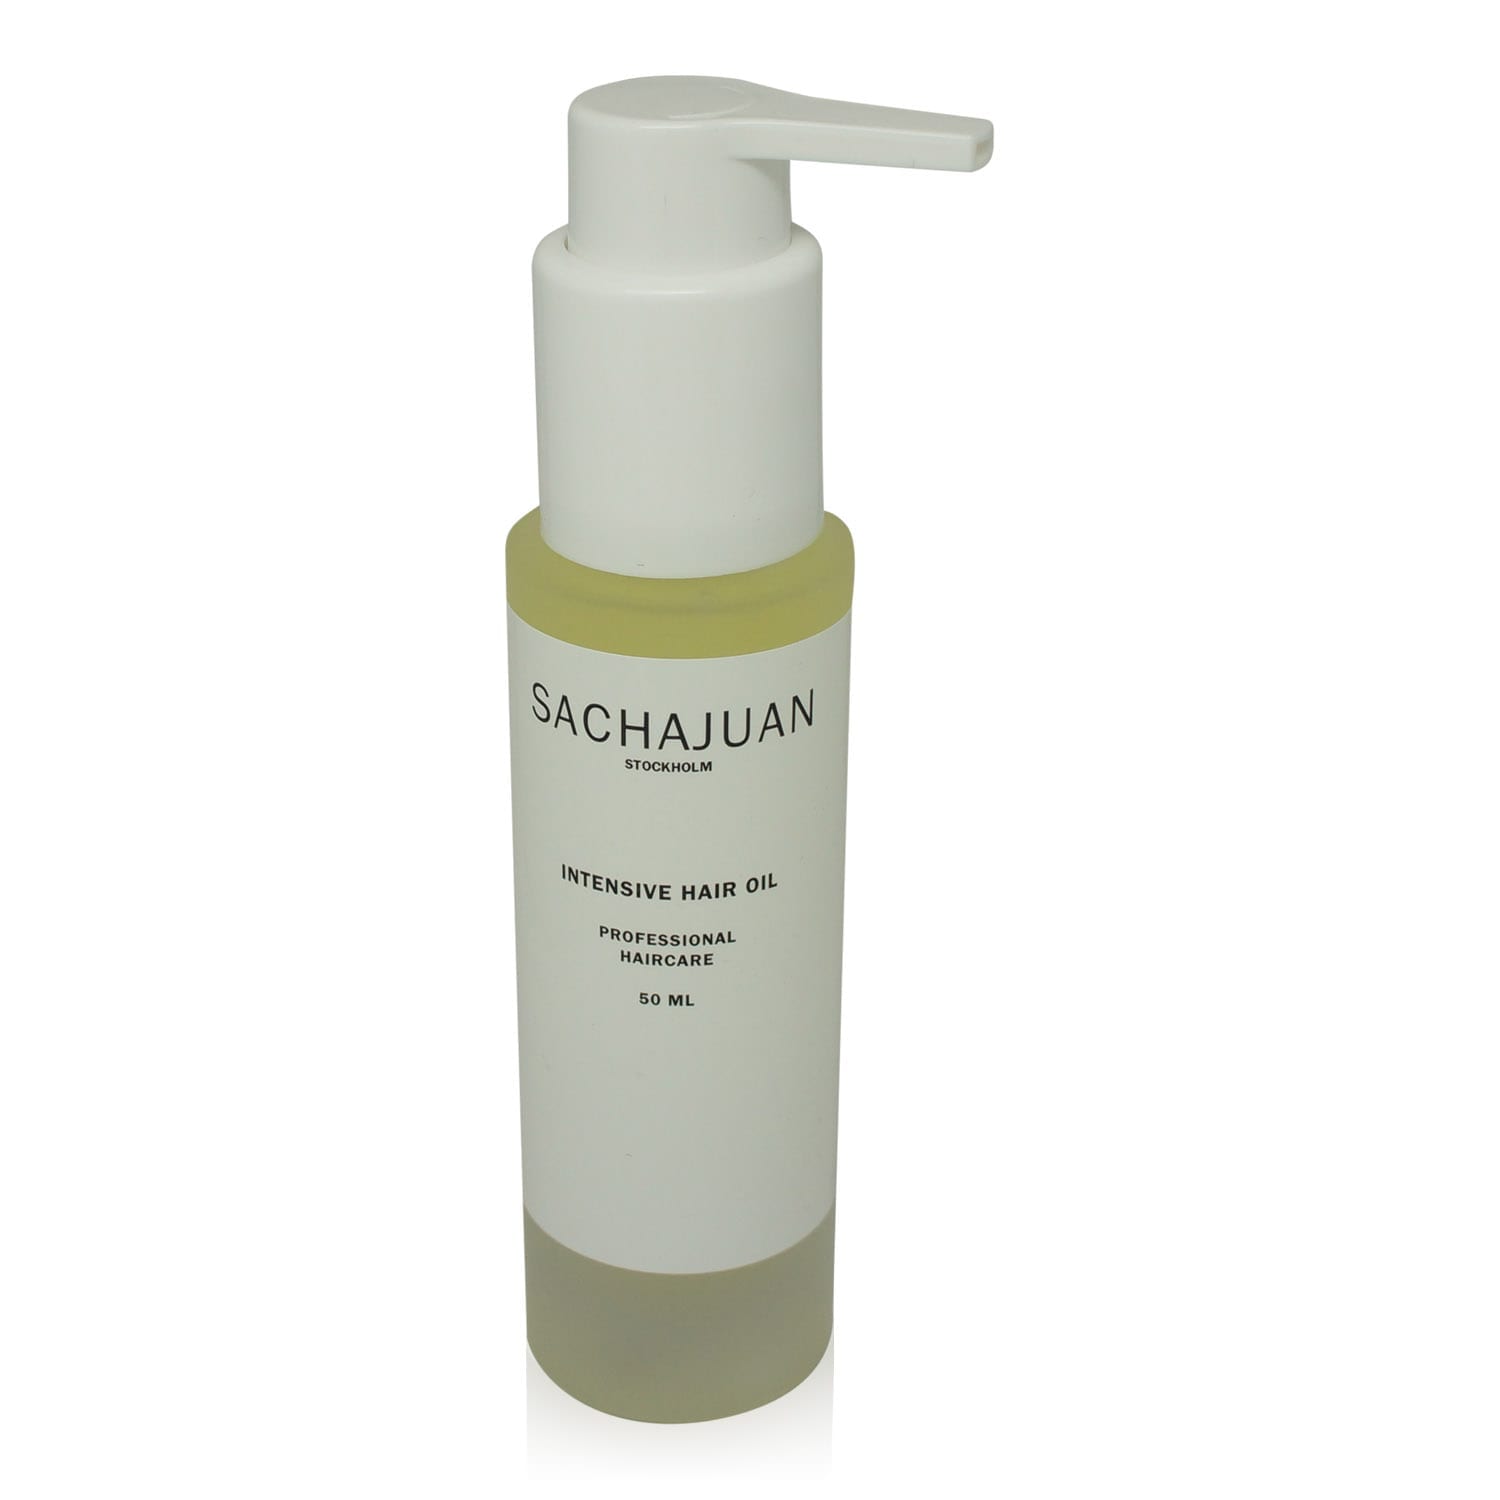 Sachajuan Intensive Hair Oil soothes your summer hair